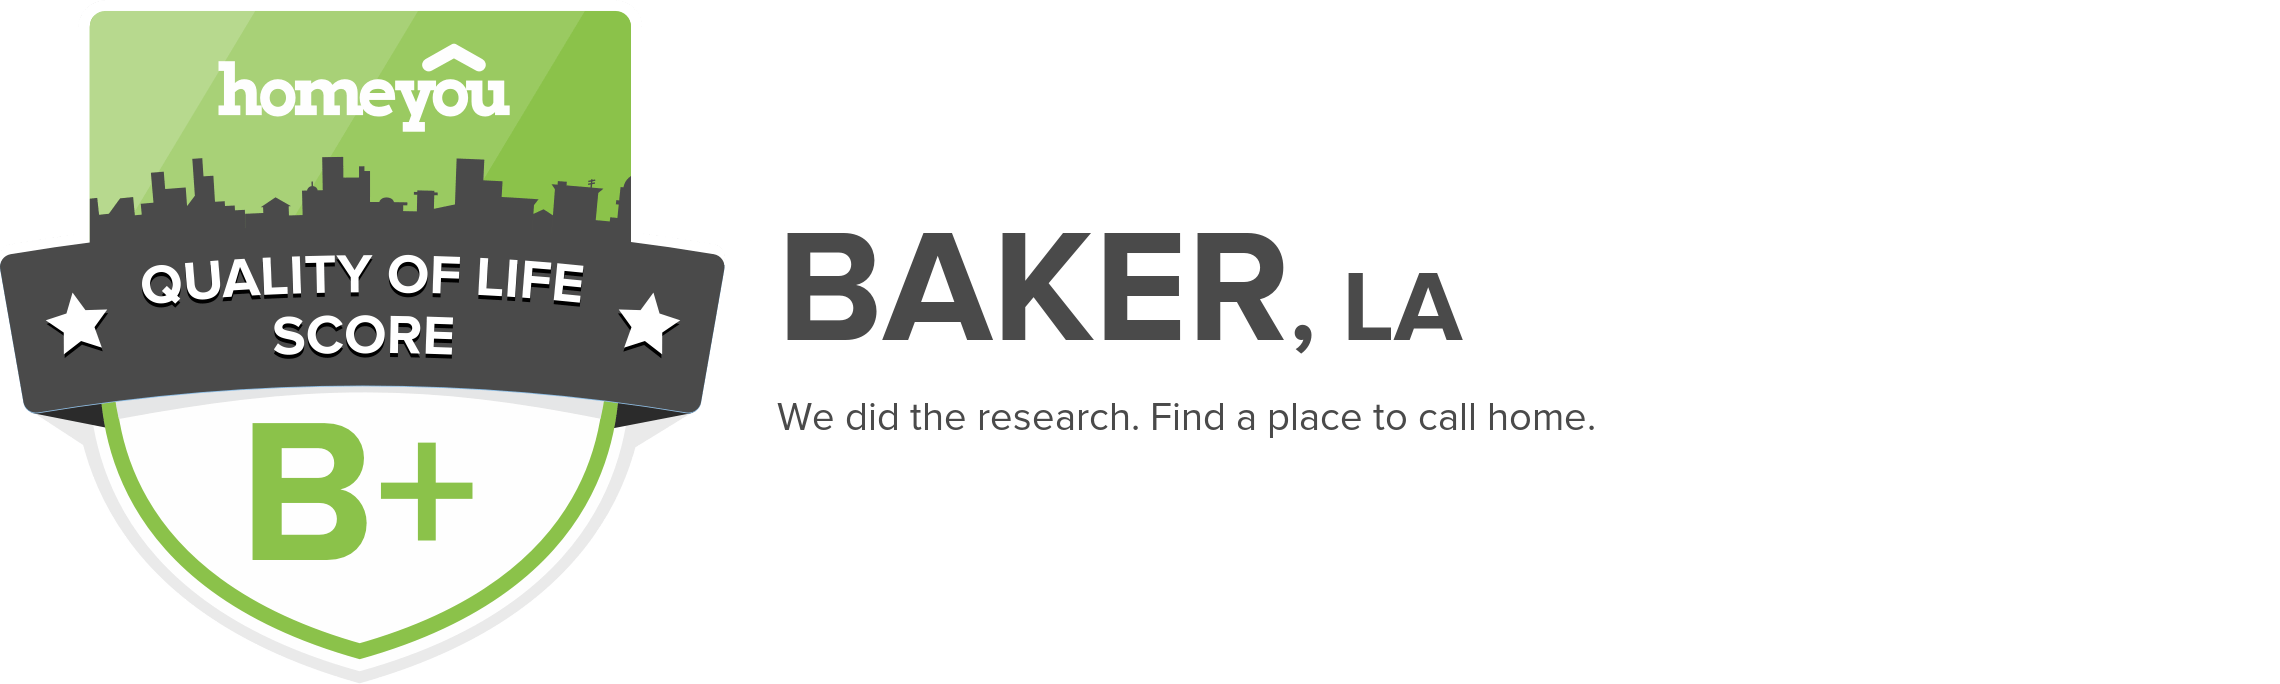 Baker, LA